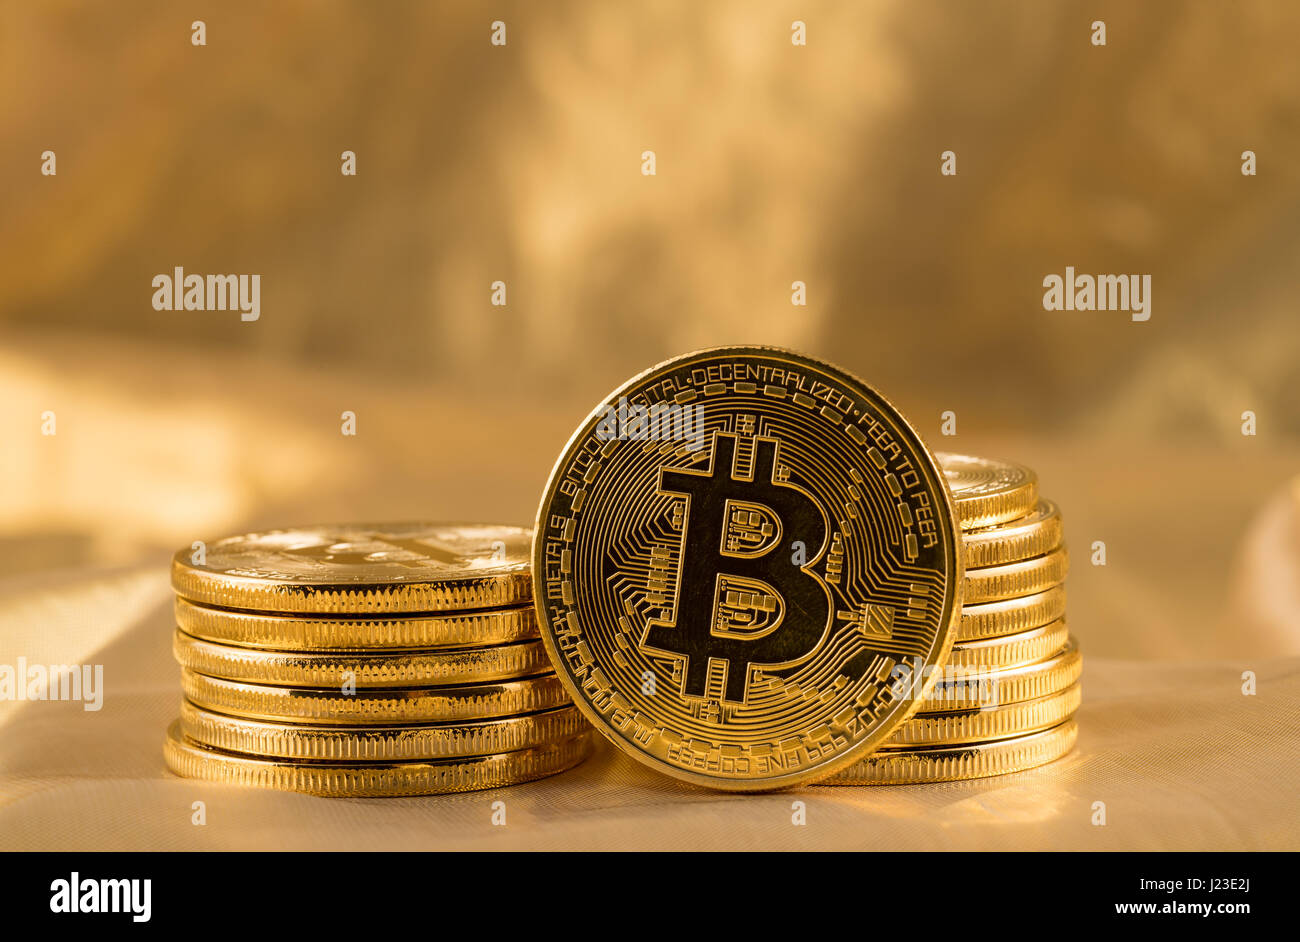 Stapel von wenig Münzen oder Bitcoin auf Goldgrund, Blockchain und Cyber-Währung zu illustrieren Stockfoto